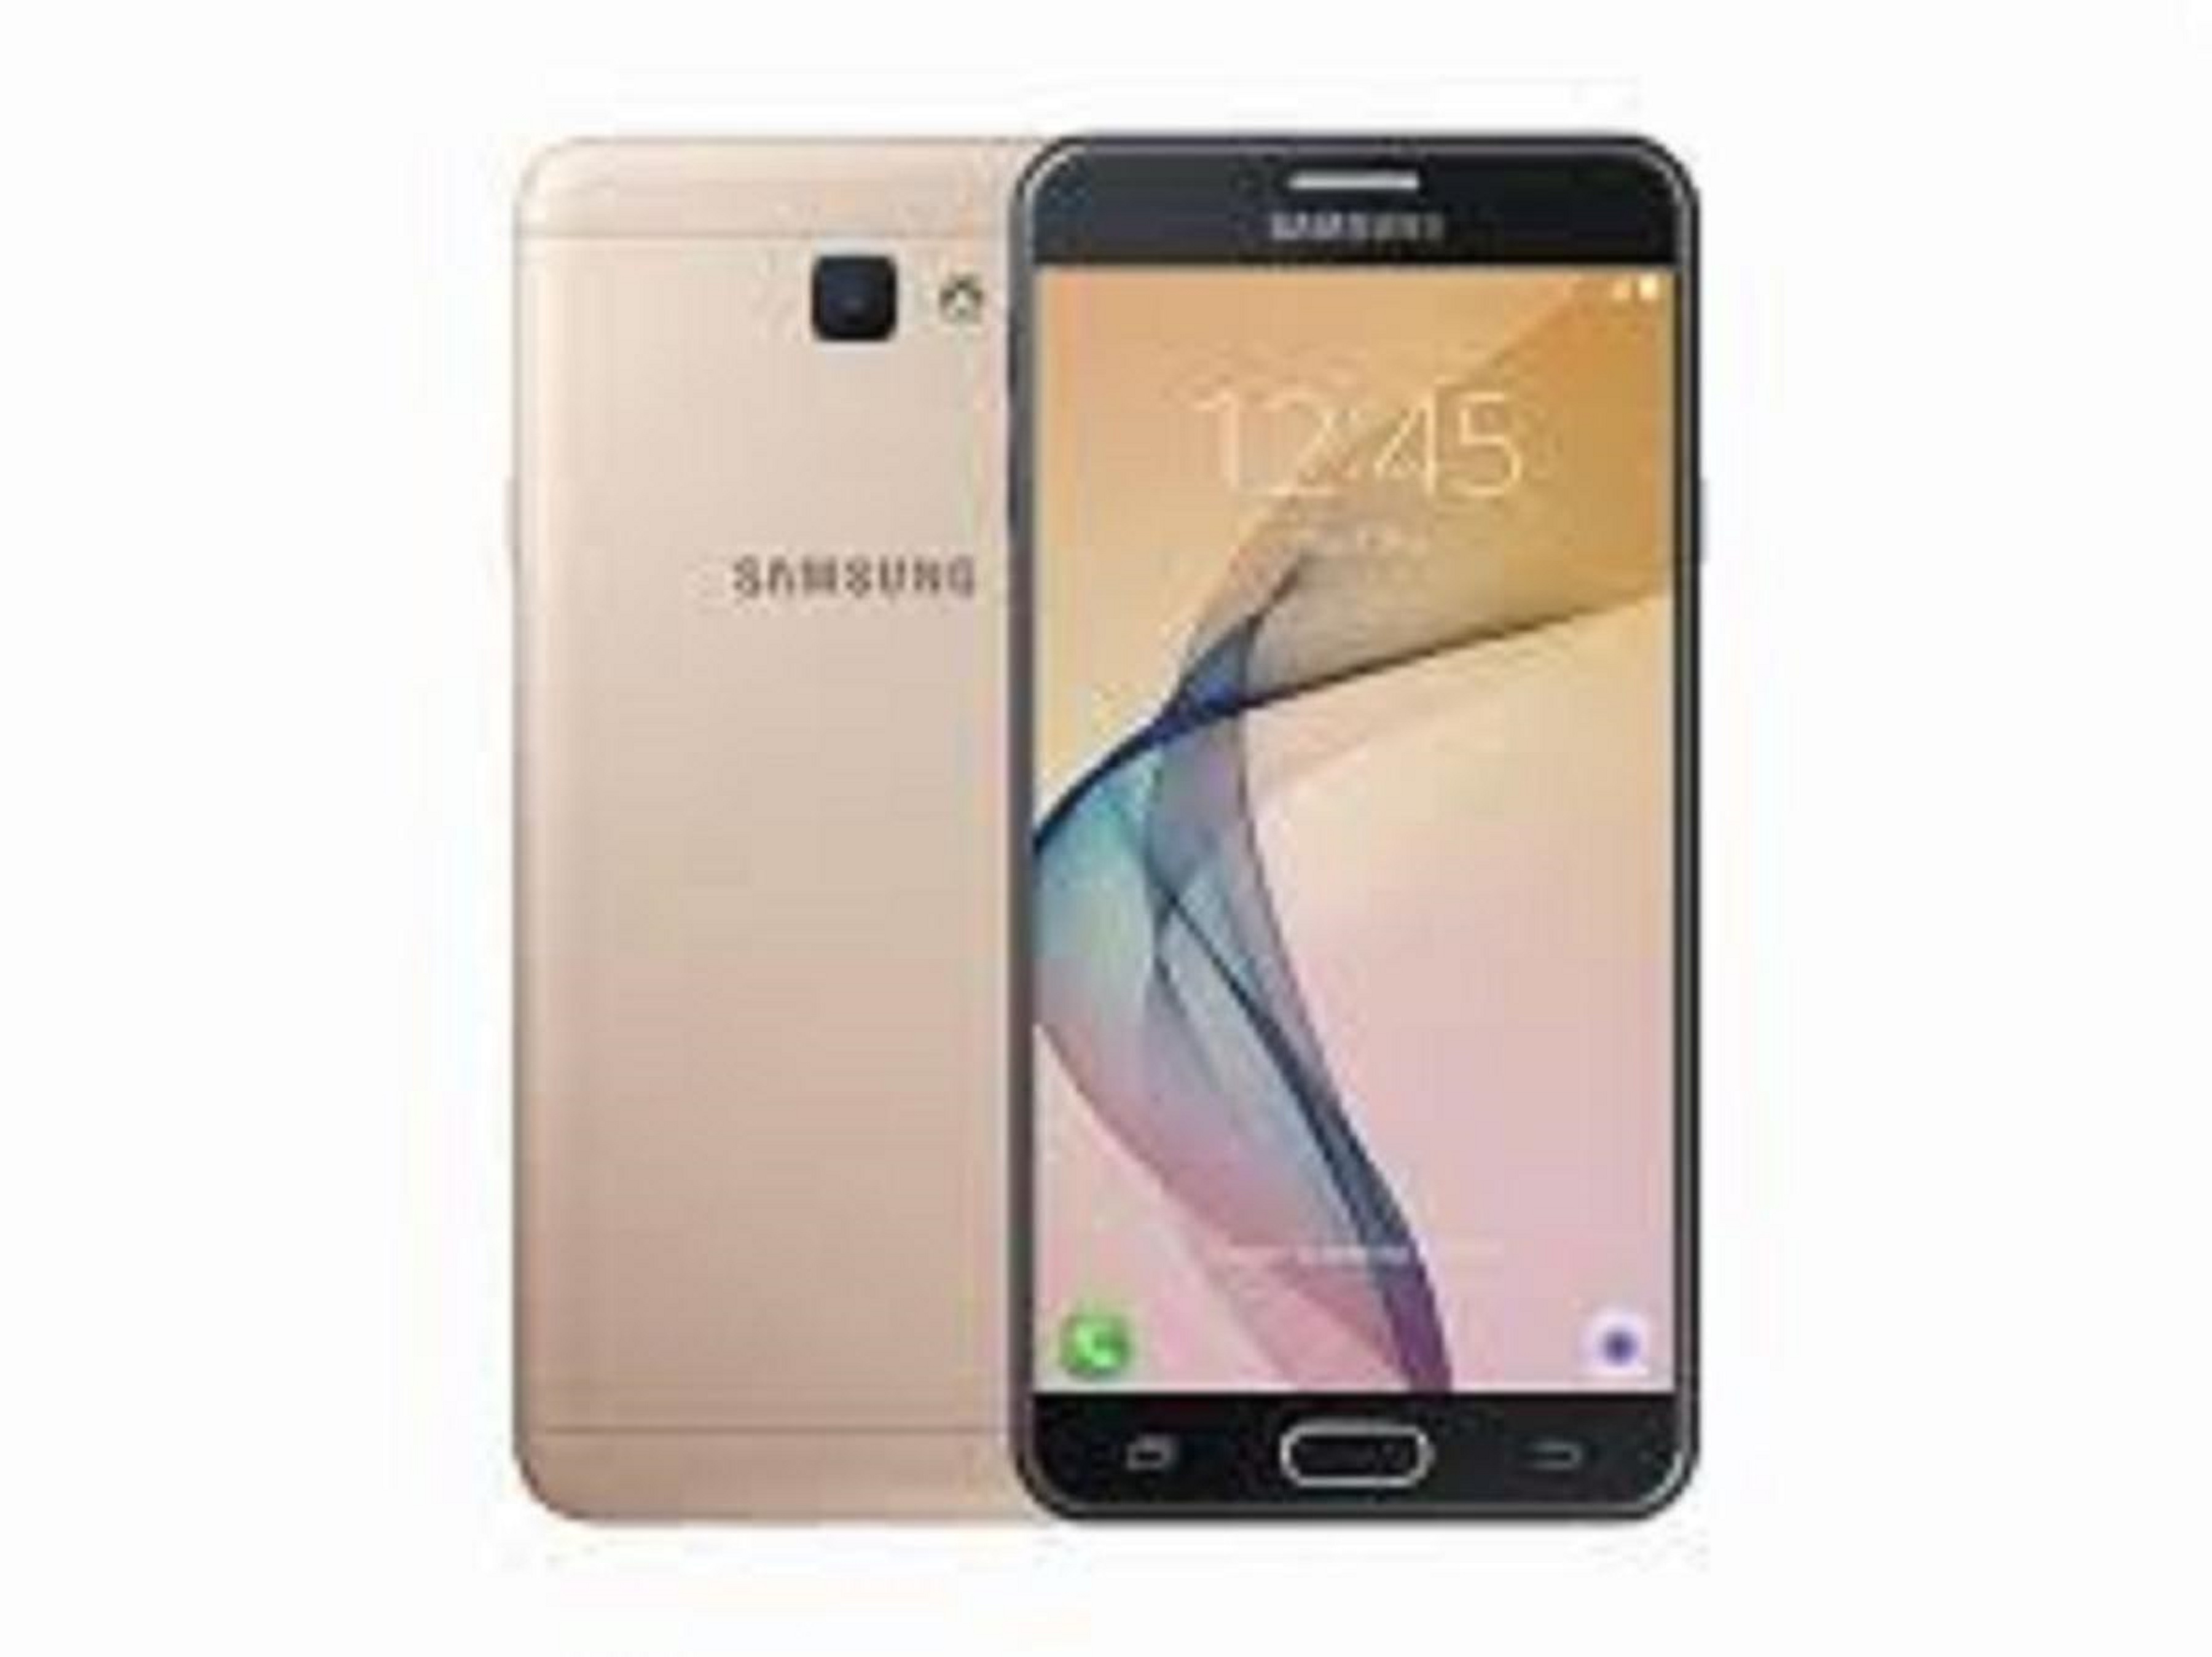 điện thoại Samsung Galaxy J7 Prime 2sim zin, Chơi PUBG/Liên Quân mượt -Bao đổi miễn phí tại nhà